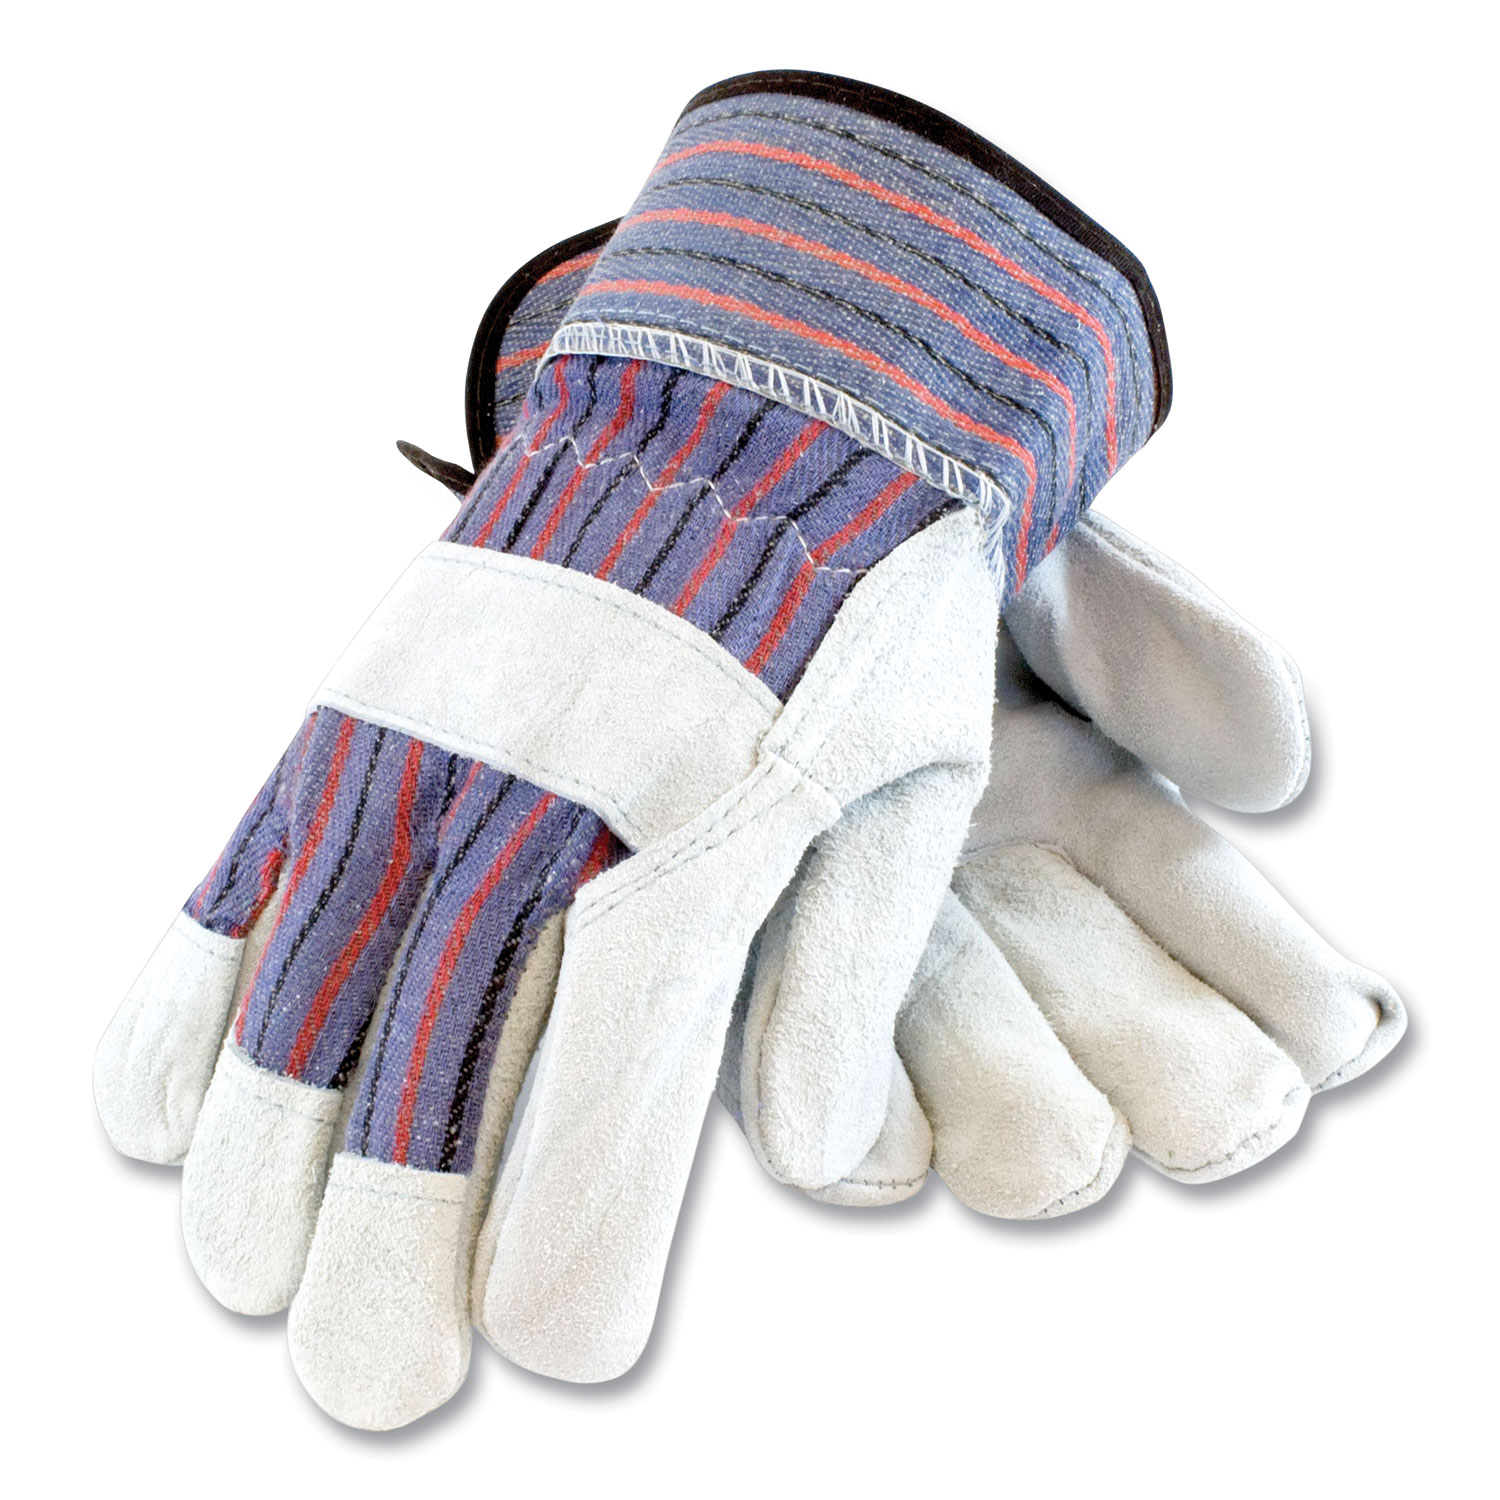 G-Tek GP Polyurethane-Coated Nylon Gloves Large Gray 12 Pairs